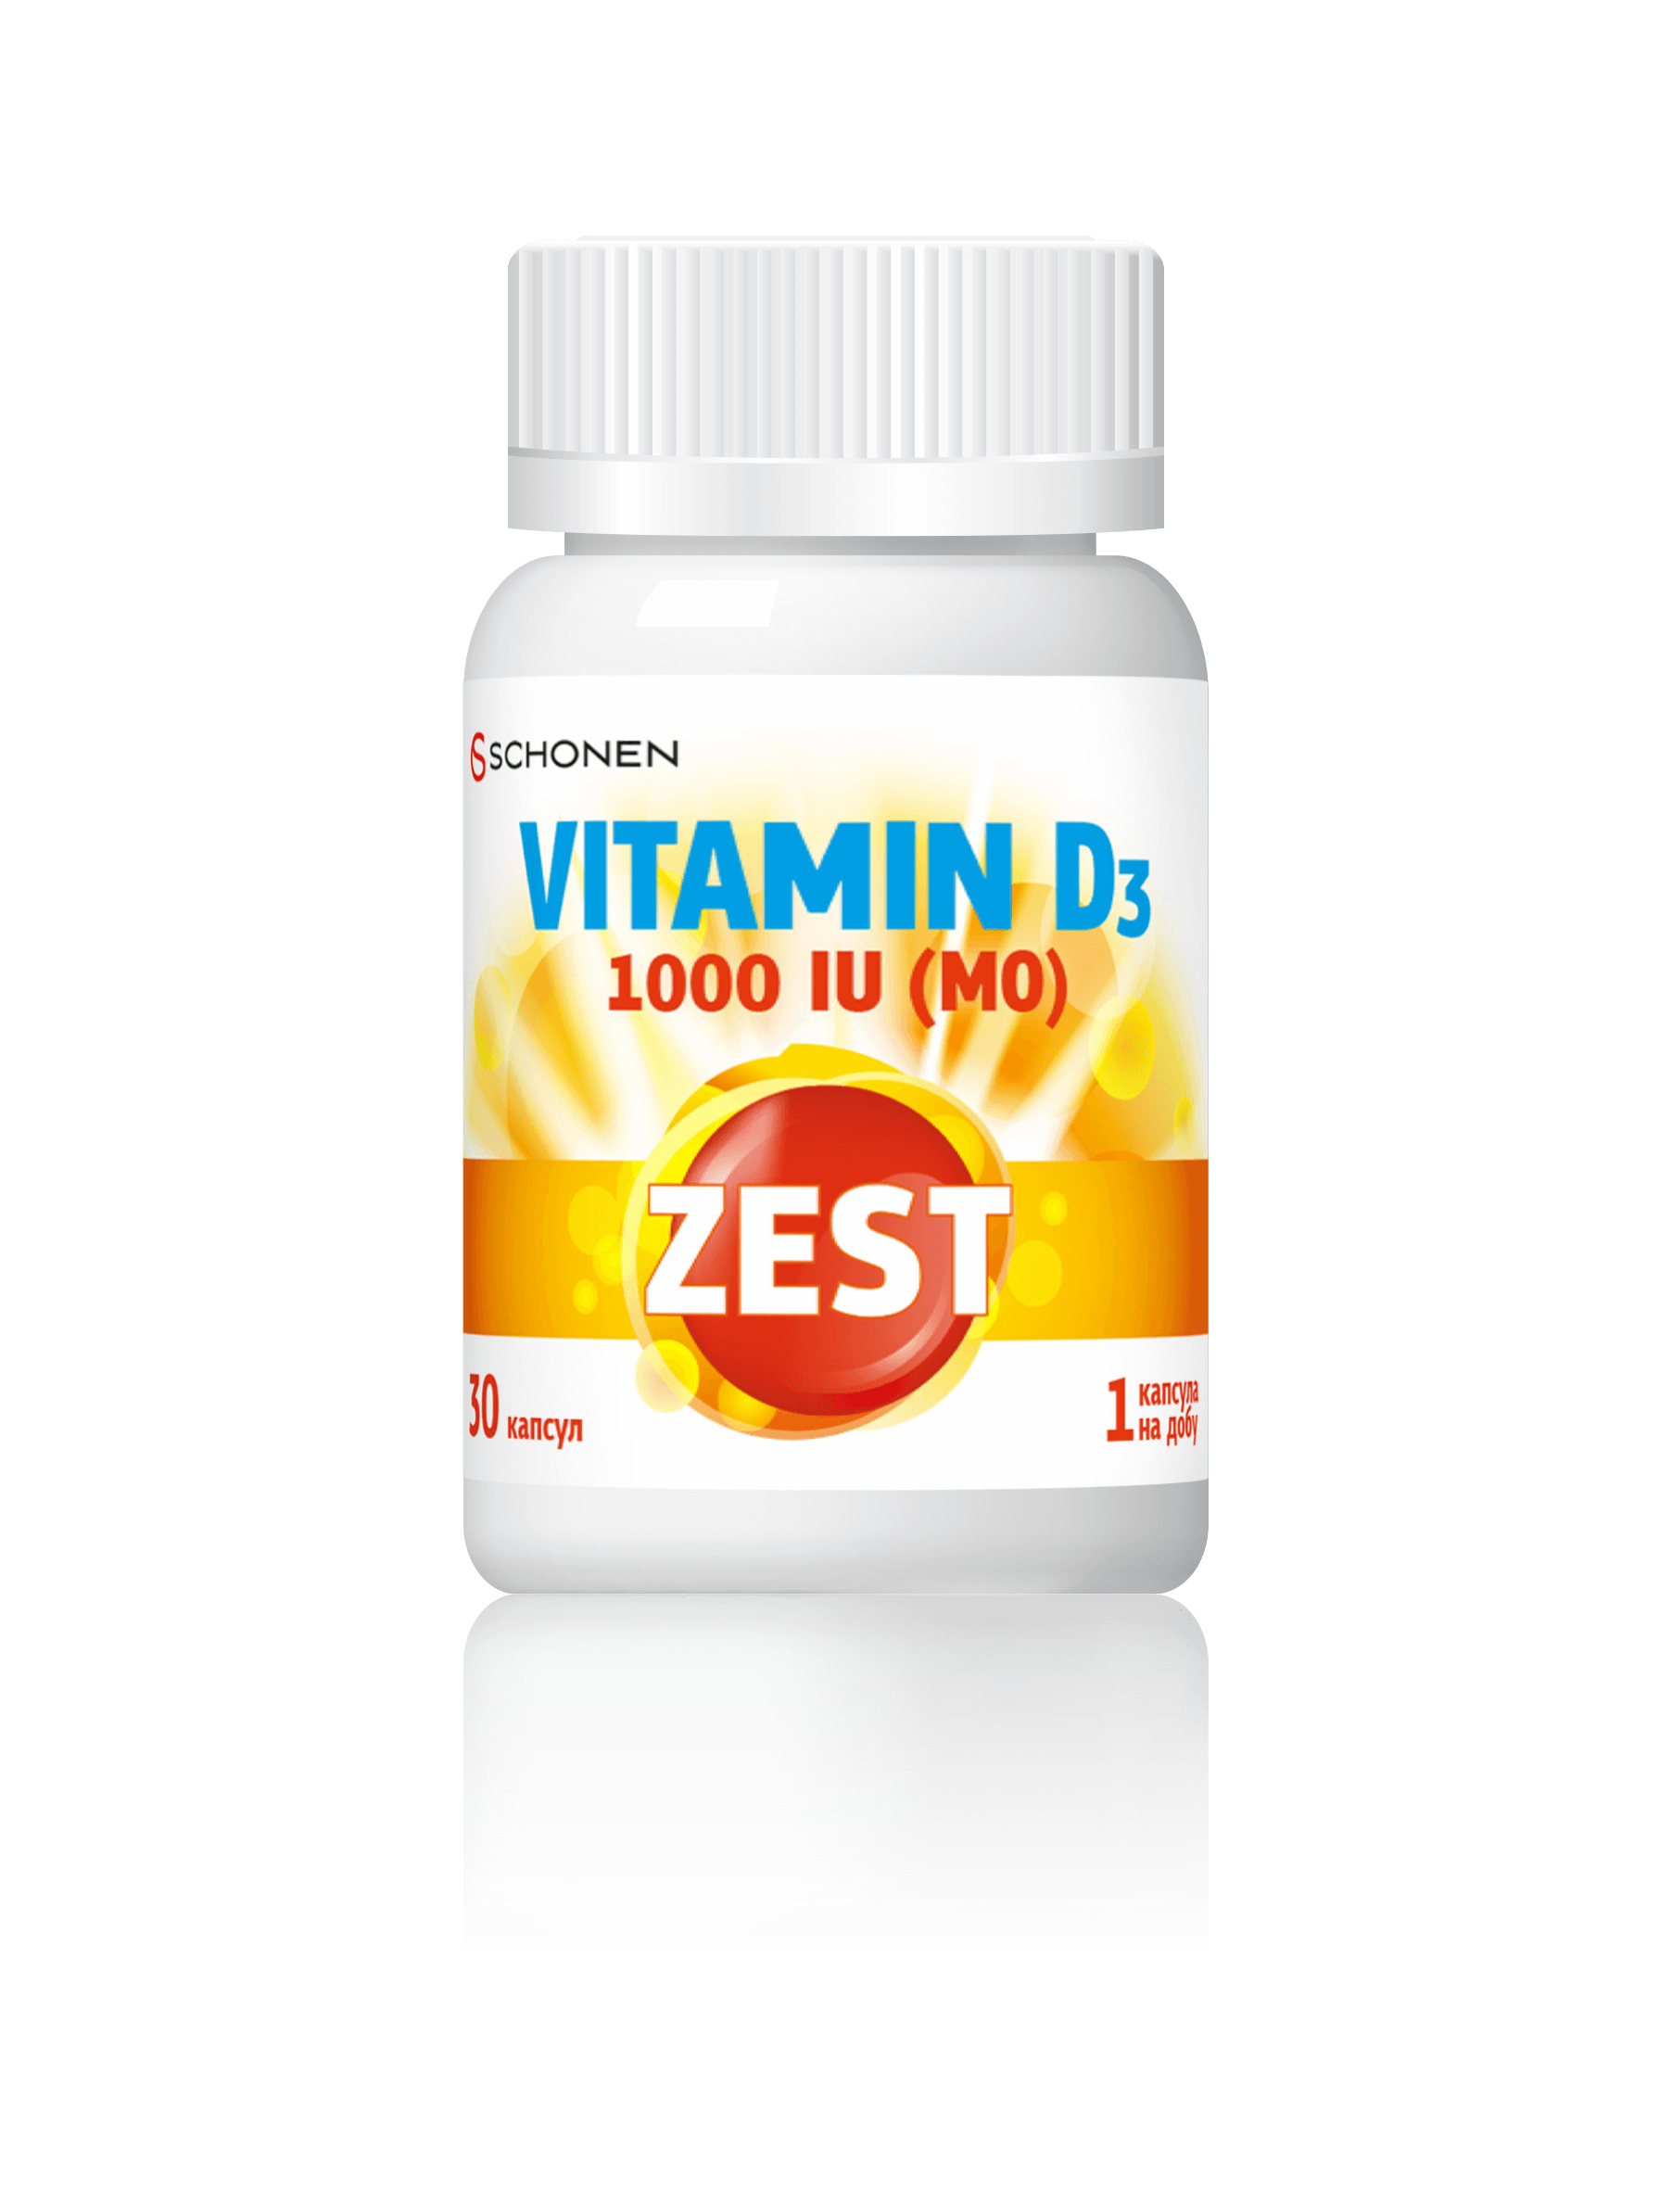 Д3 4000ме. Витамин д3 4000ме. Zest Multivitamin витамины. Витамин д3 в капсулах. Витамин д 4000ме.